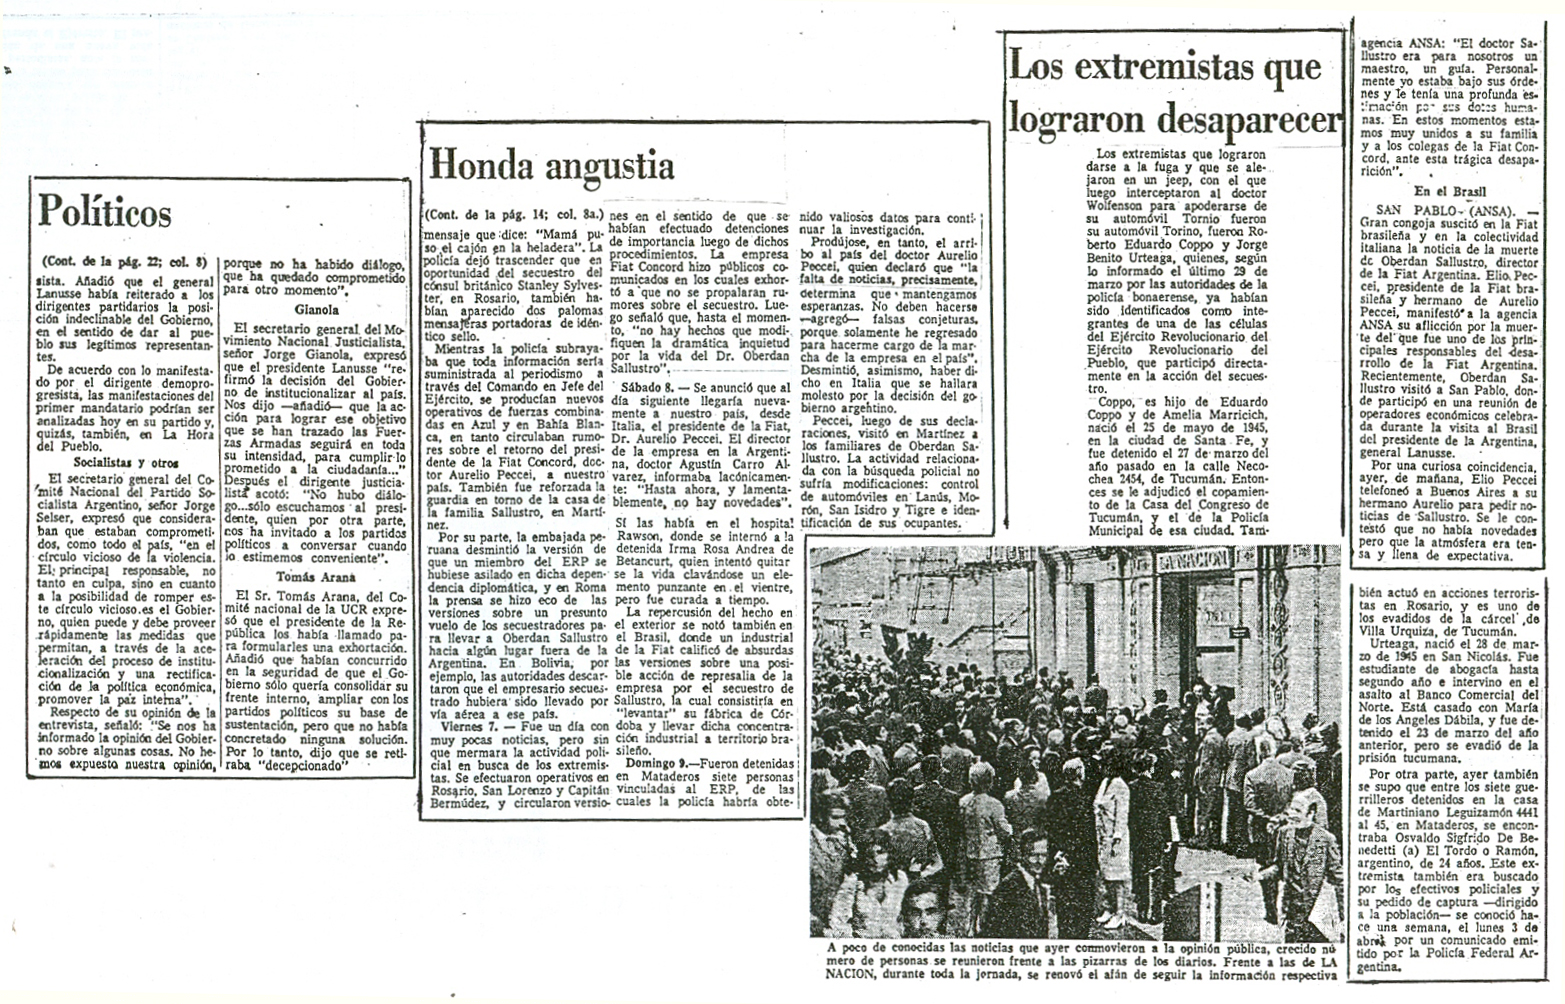 [1972-11-04+La+Nacion+-+Asesinatos+de+gral+Sanchez+y+Dr+Oberdan+Sallustro+21.jpg]